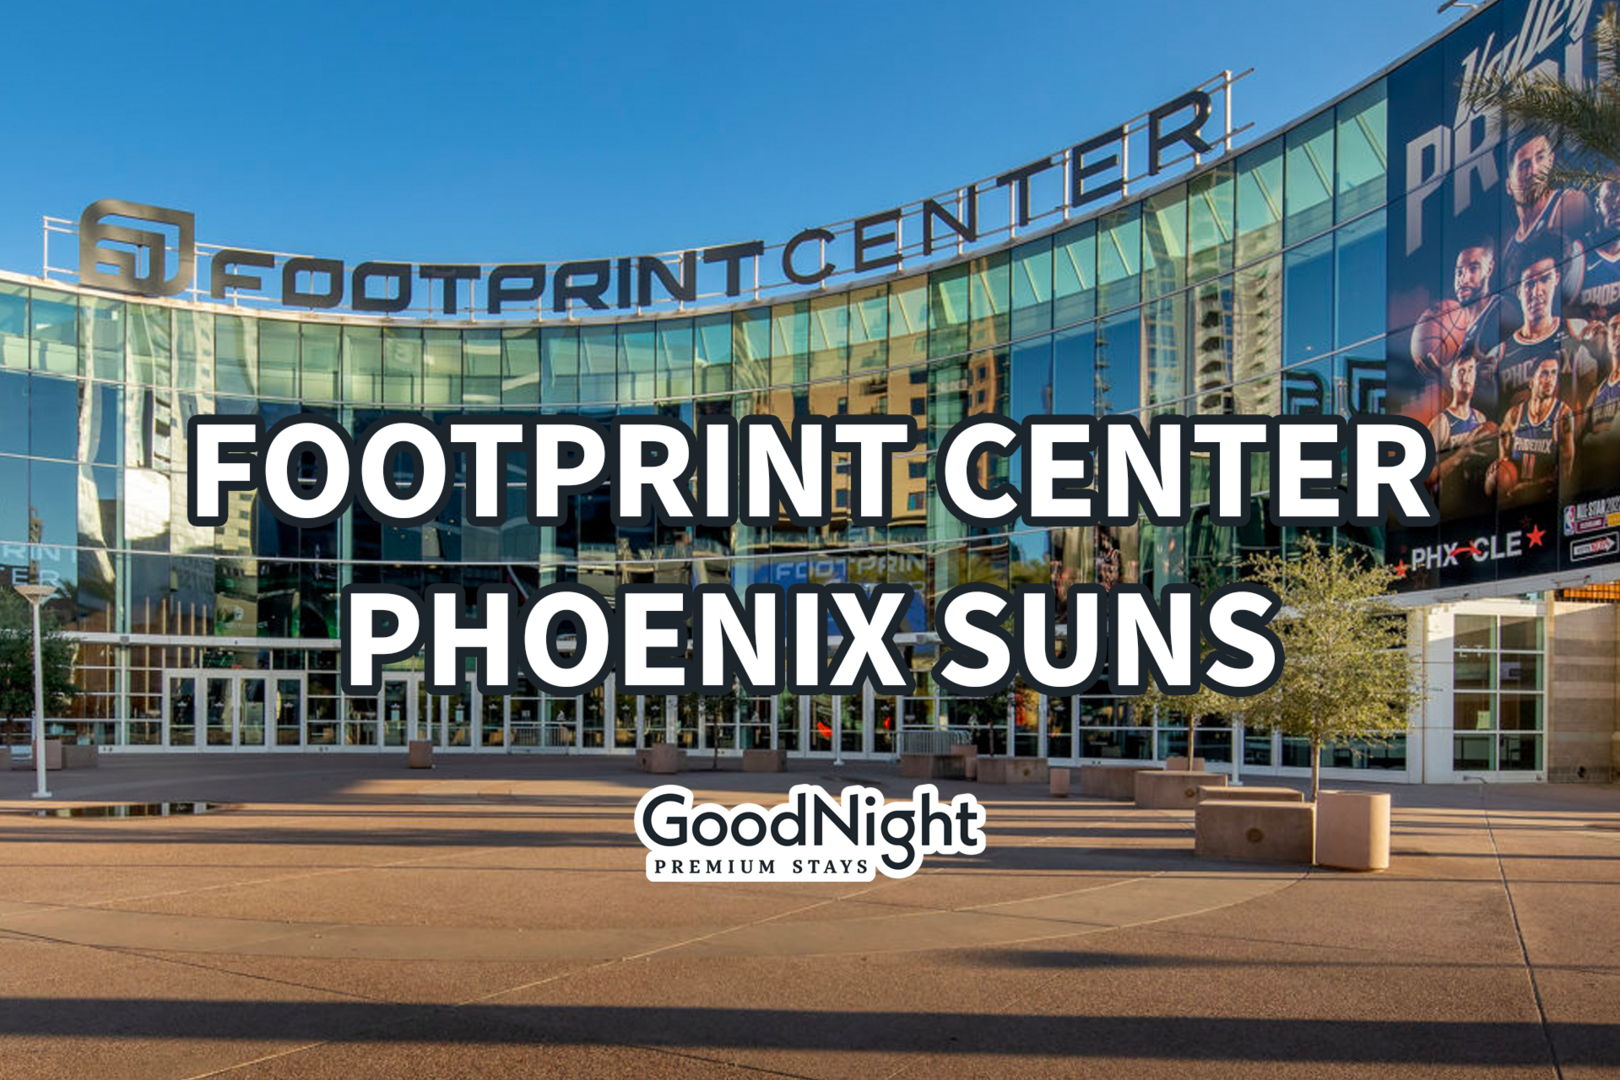 20 mins: Footprint Center - Phoenix Suns